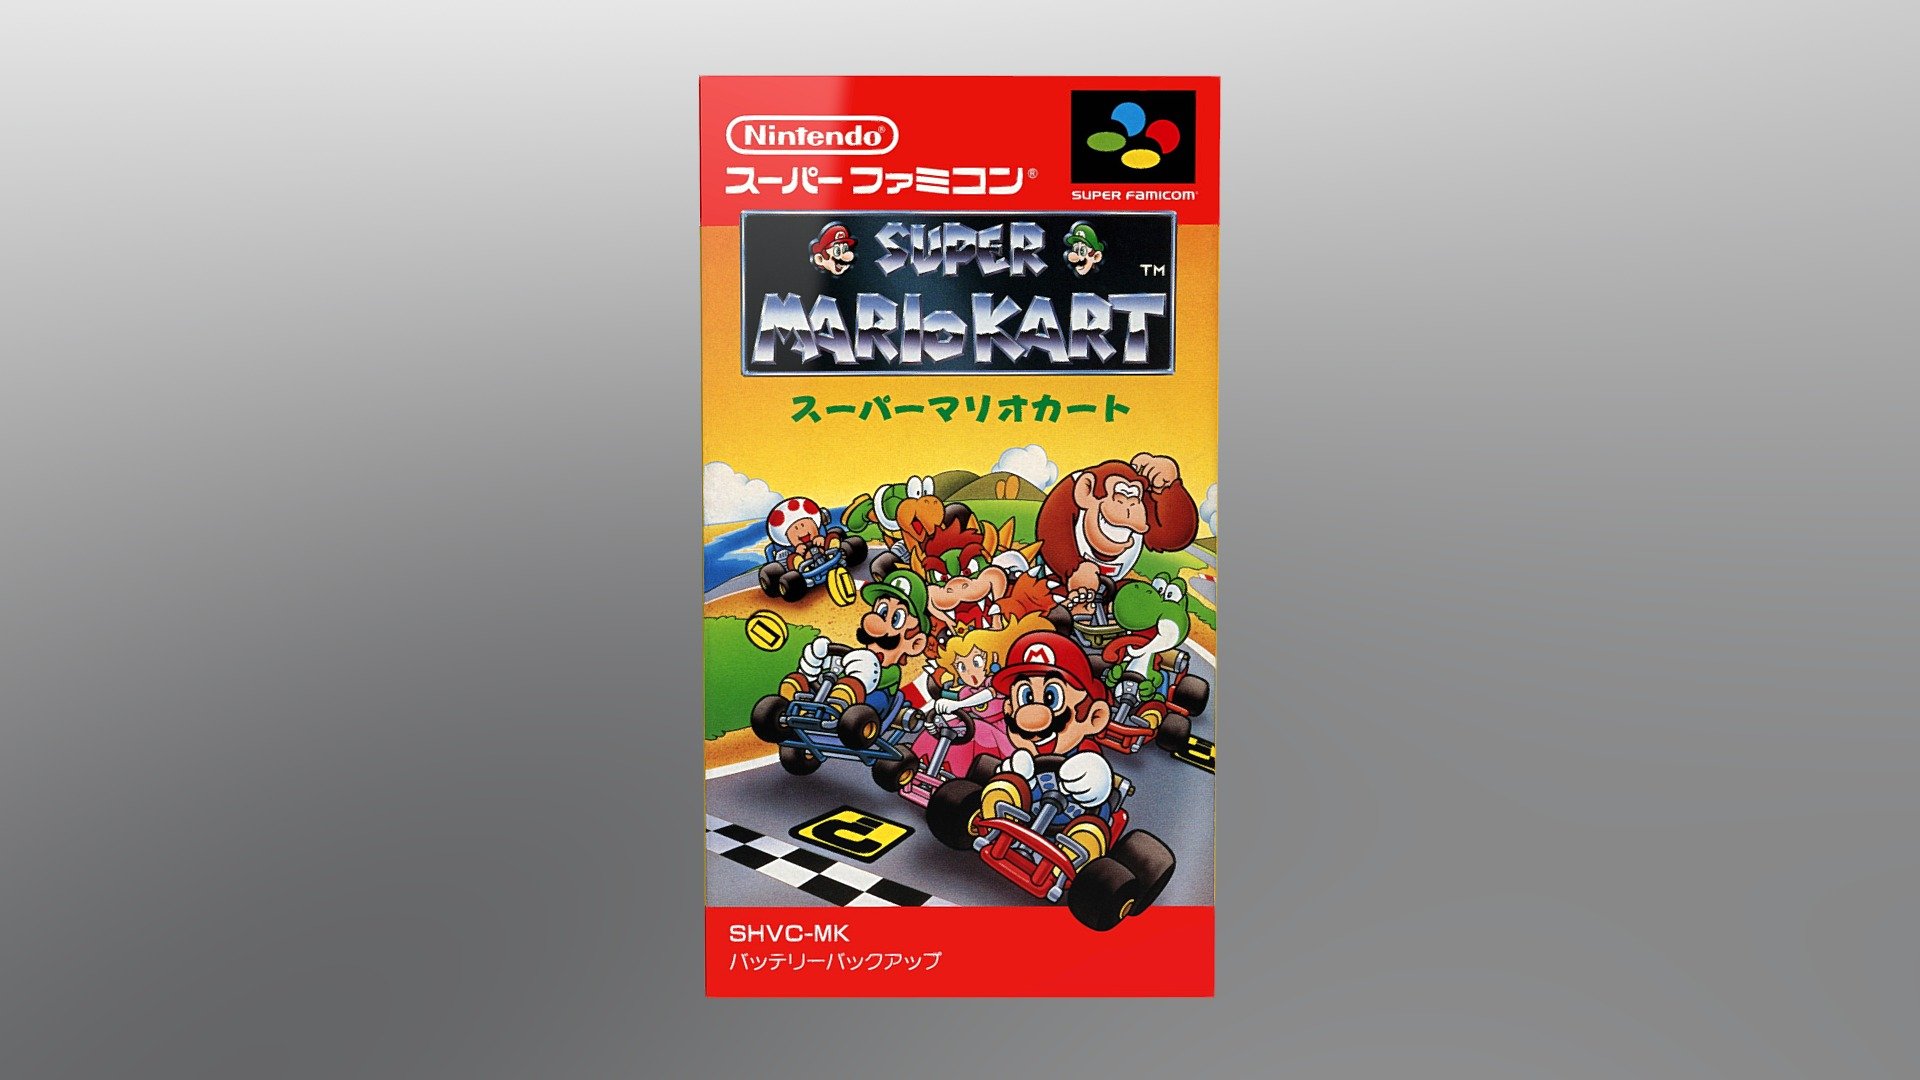 Super Mario kart - Super Famicom (SFC) 3D Box - Super Mario kart - Super Famicom (SFC) 3D Box - 3D model by sneslegacy 3d model